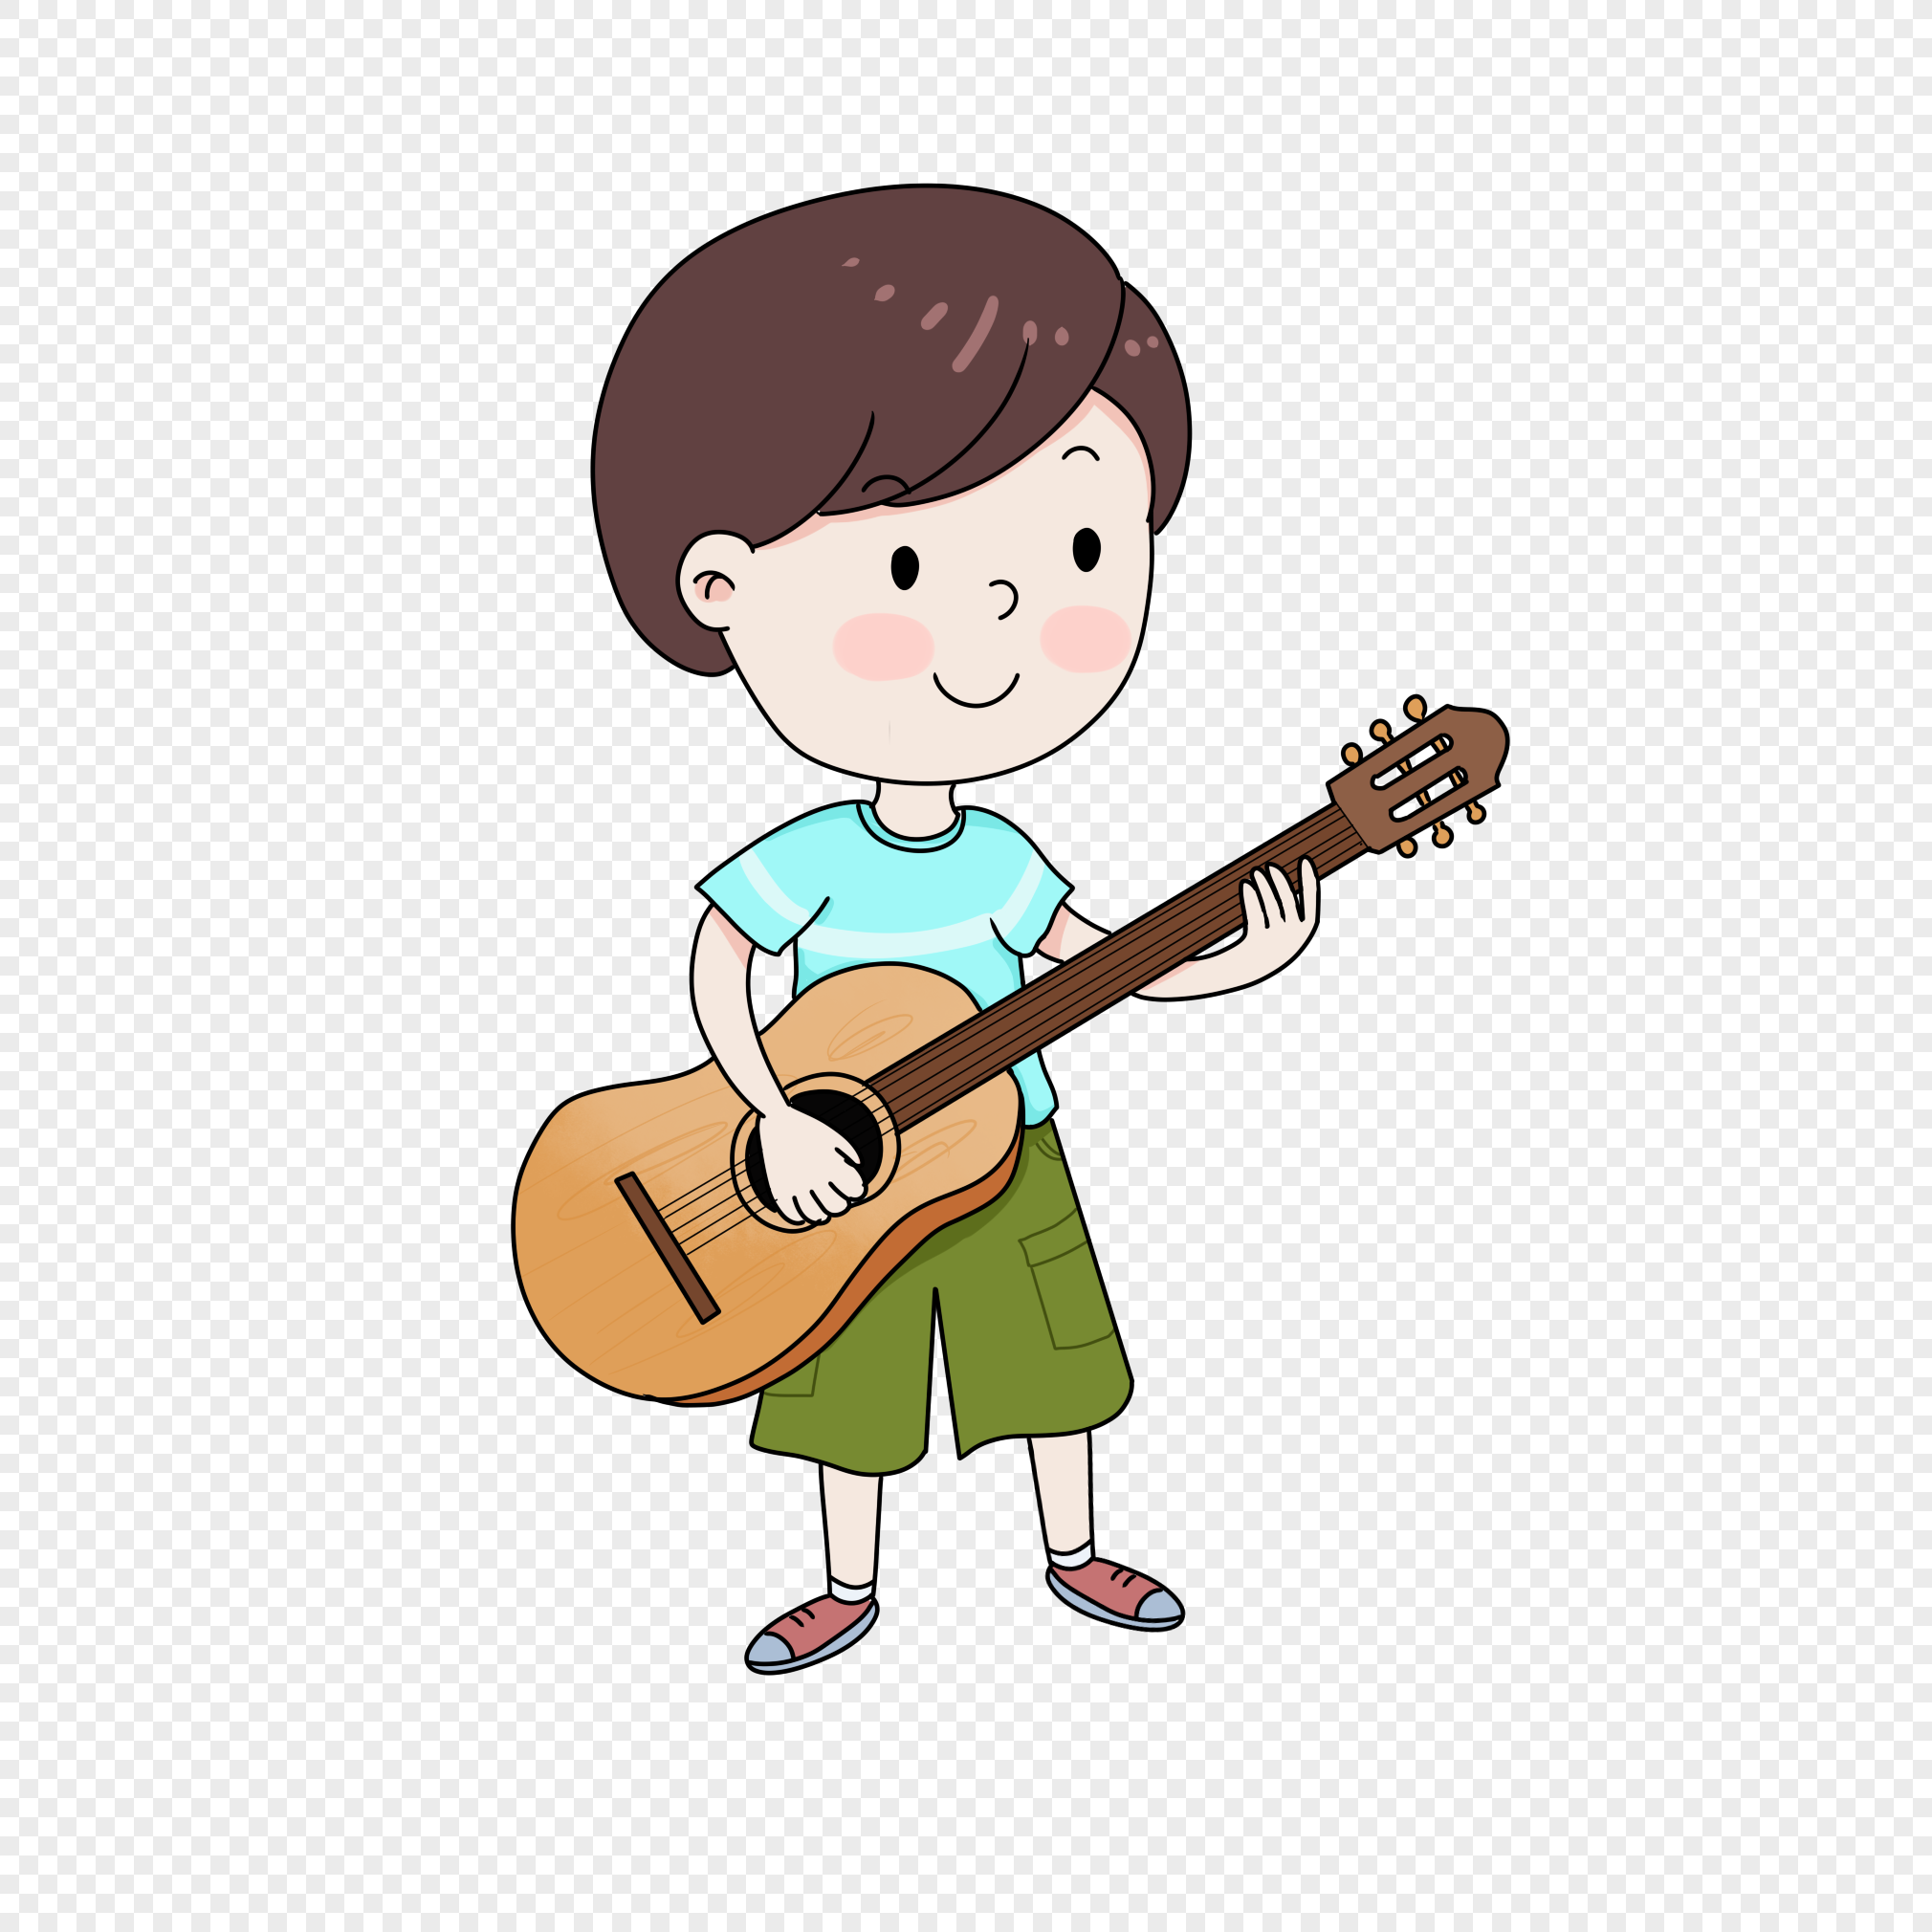  kartun anak laki laki bermain gitar gambar unduh gratis 